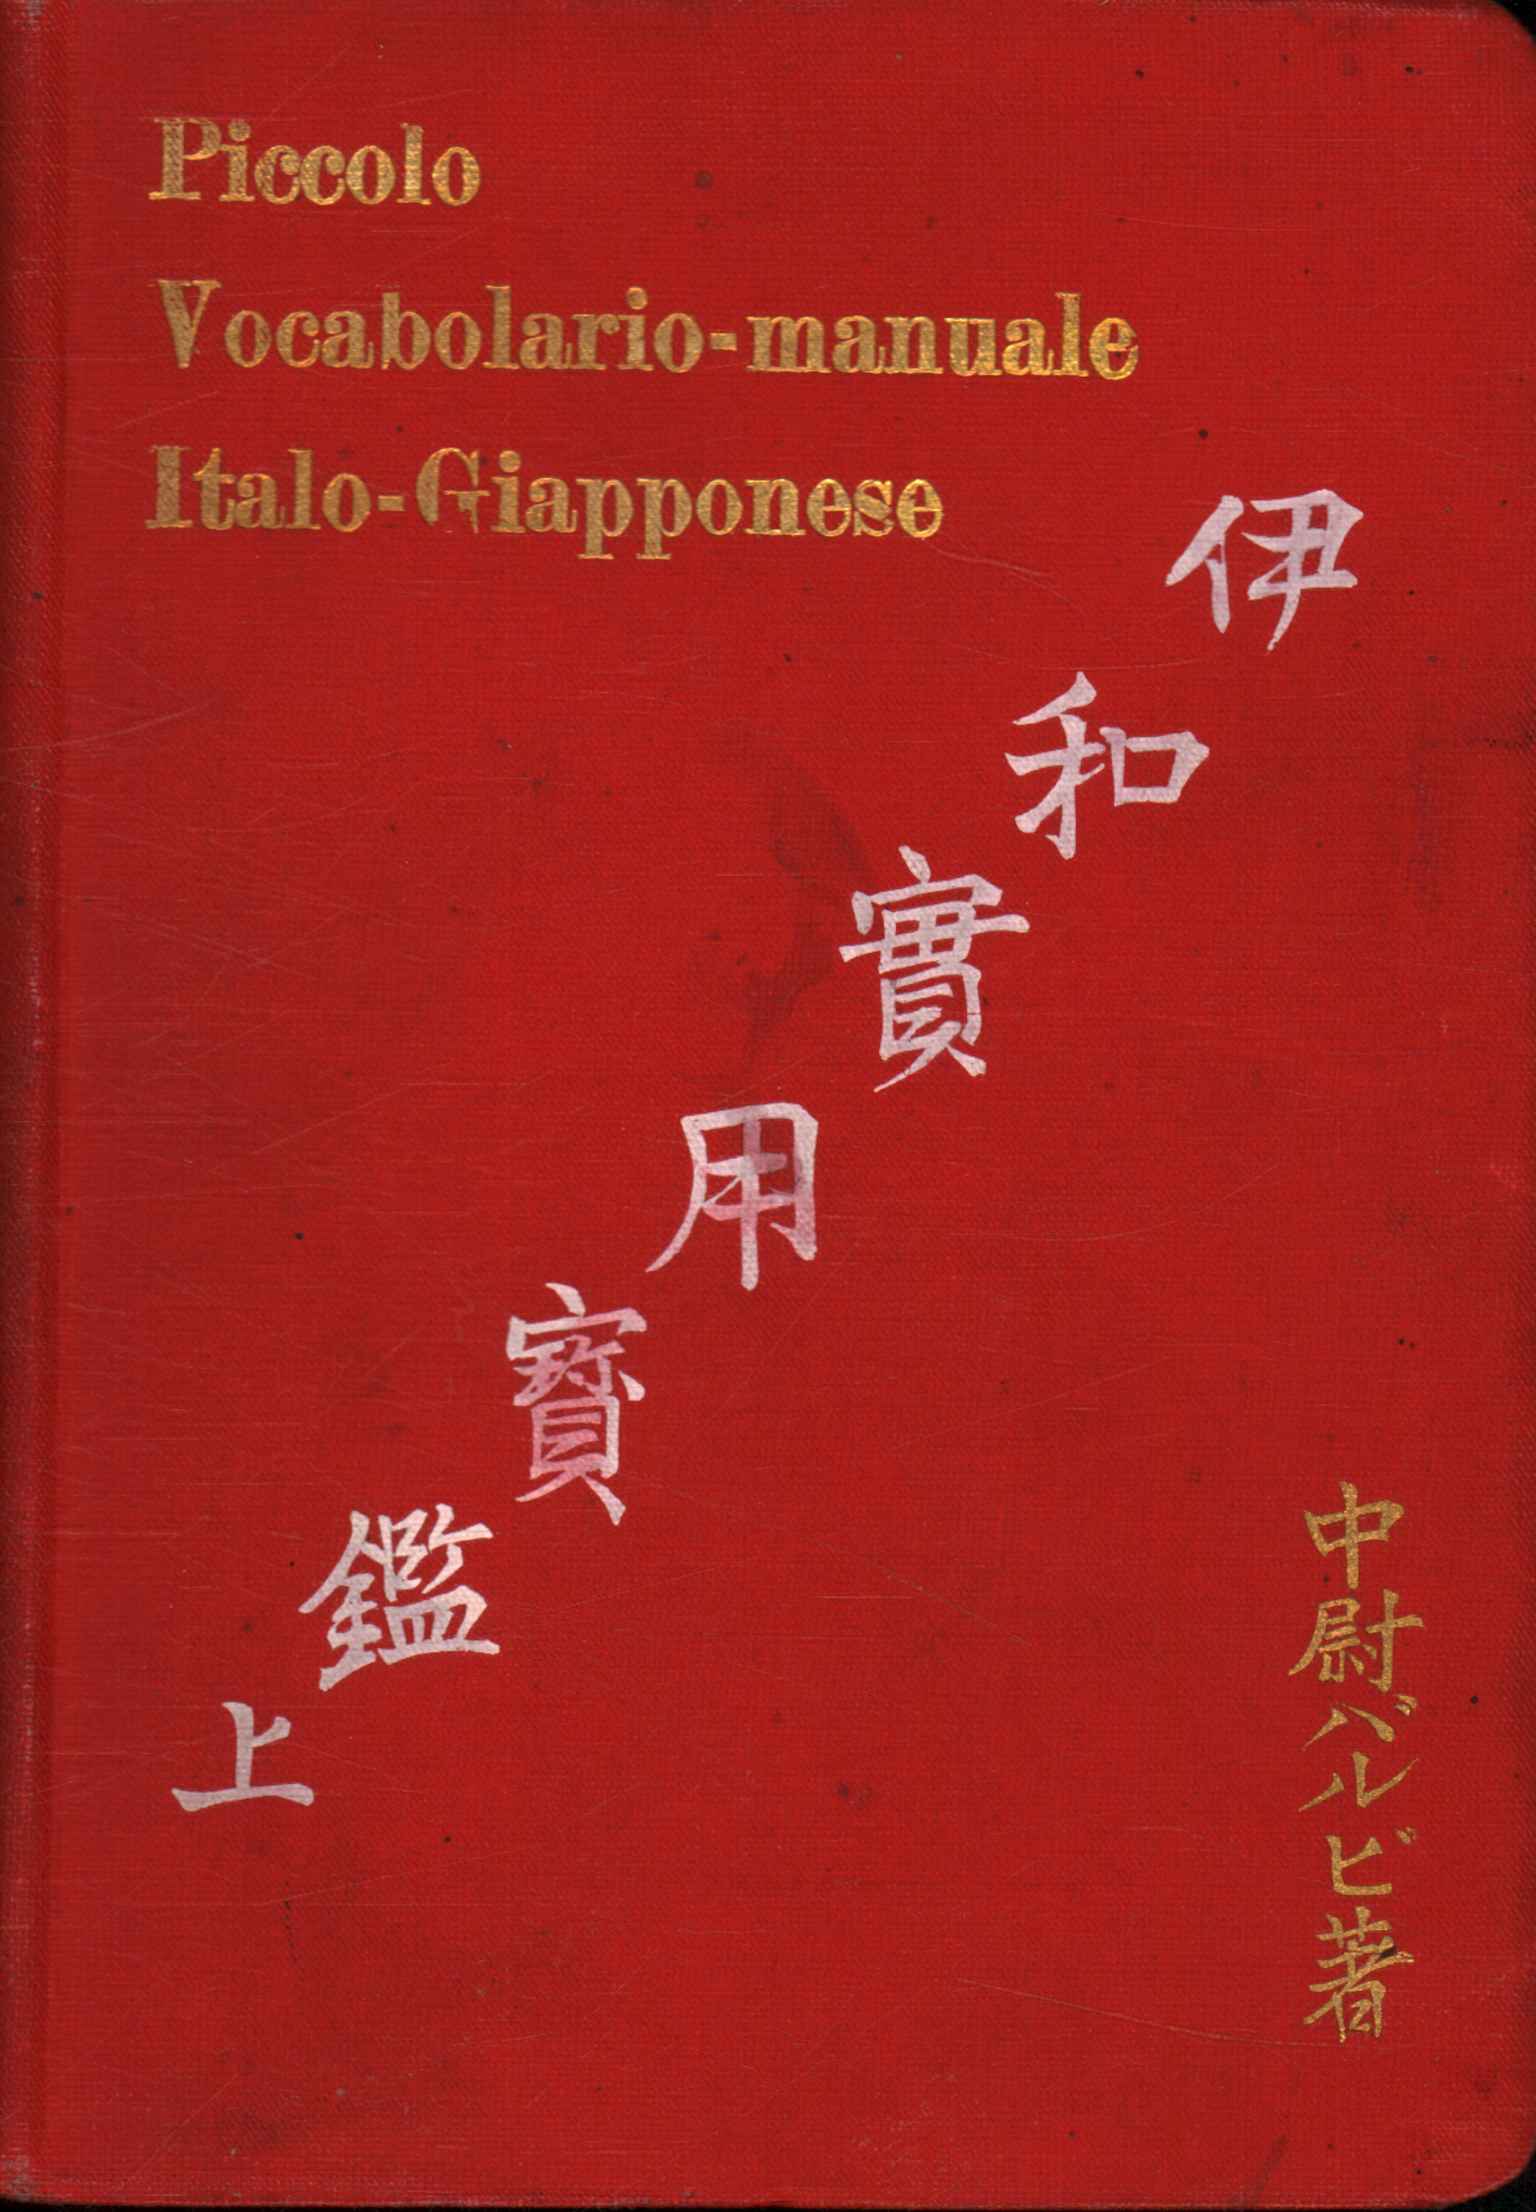 Kleiner Italienisch-Japanischer Wortschatz-Handbuch%2,Kleiner Italienisch-Japanischer Wortschatz-Handbuch%2